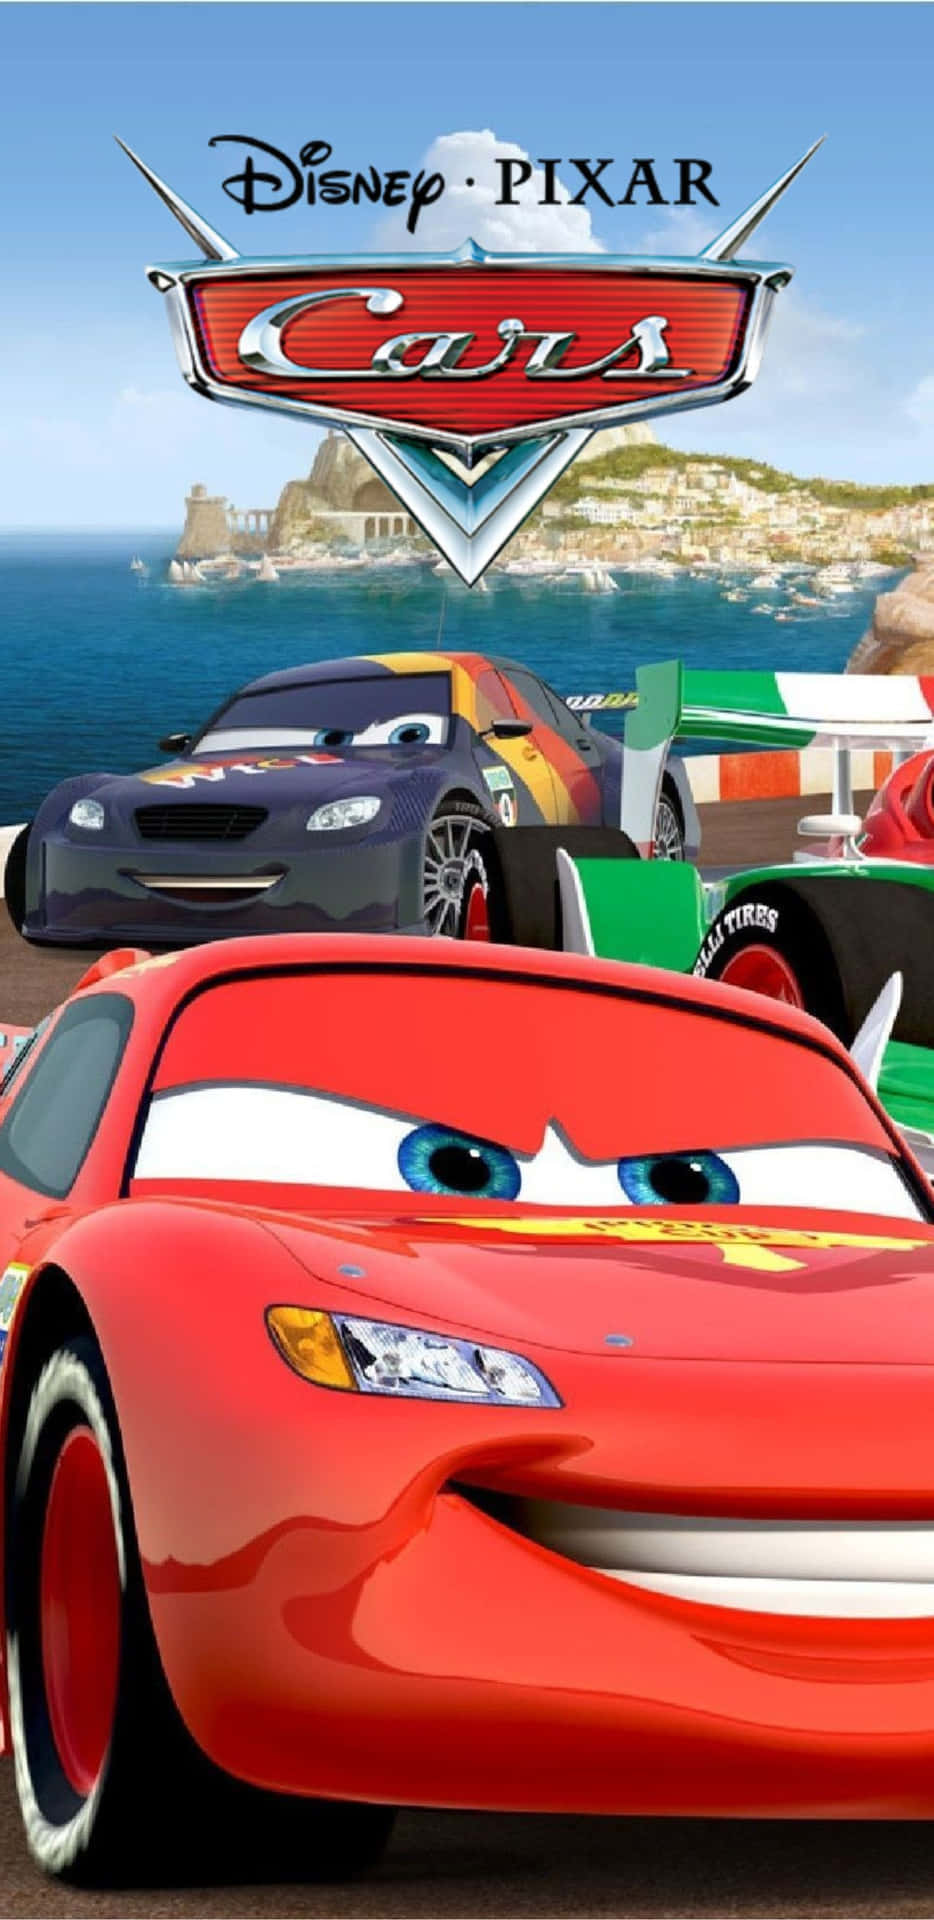 Disneypixar Cars 3 - Disney Pixars Bilar 3